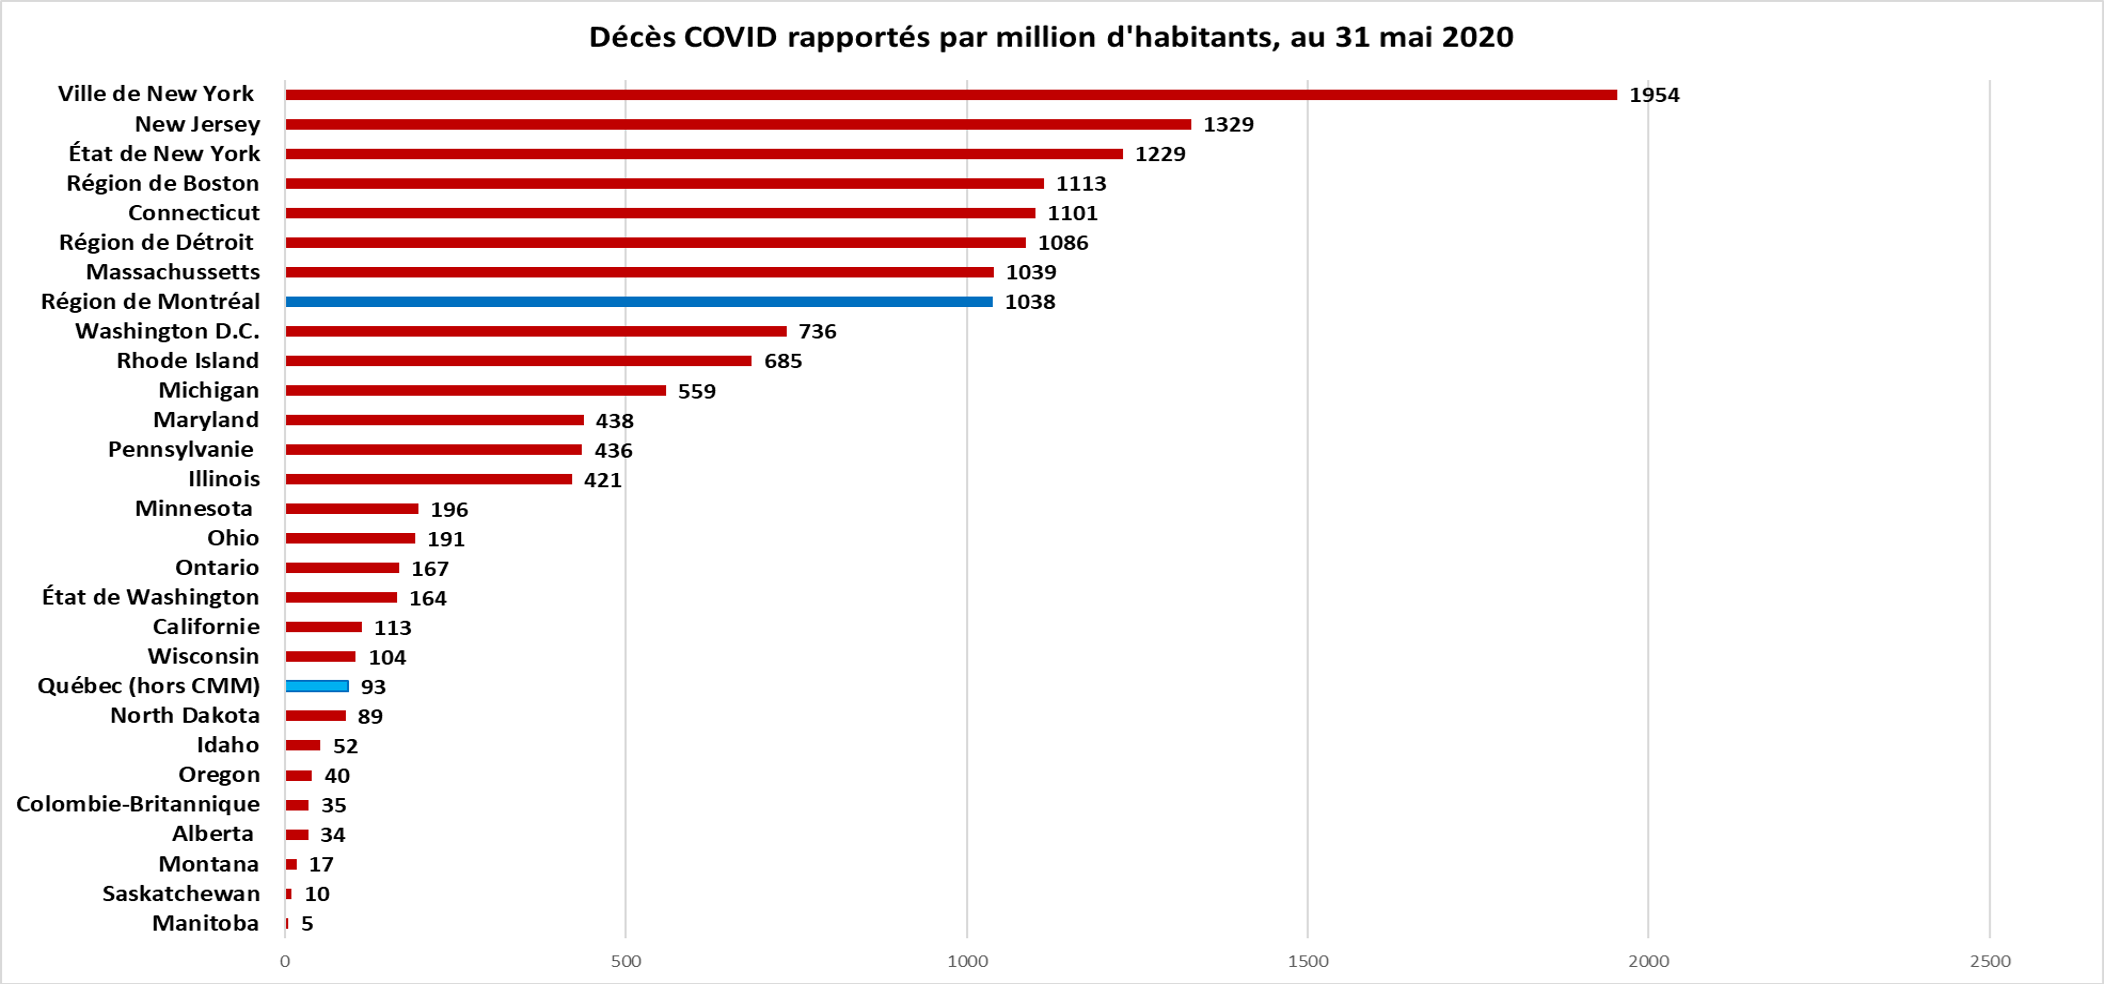 Décès COVID-19 par million d'habitants